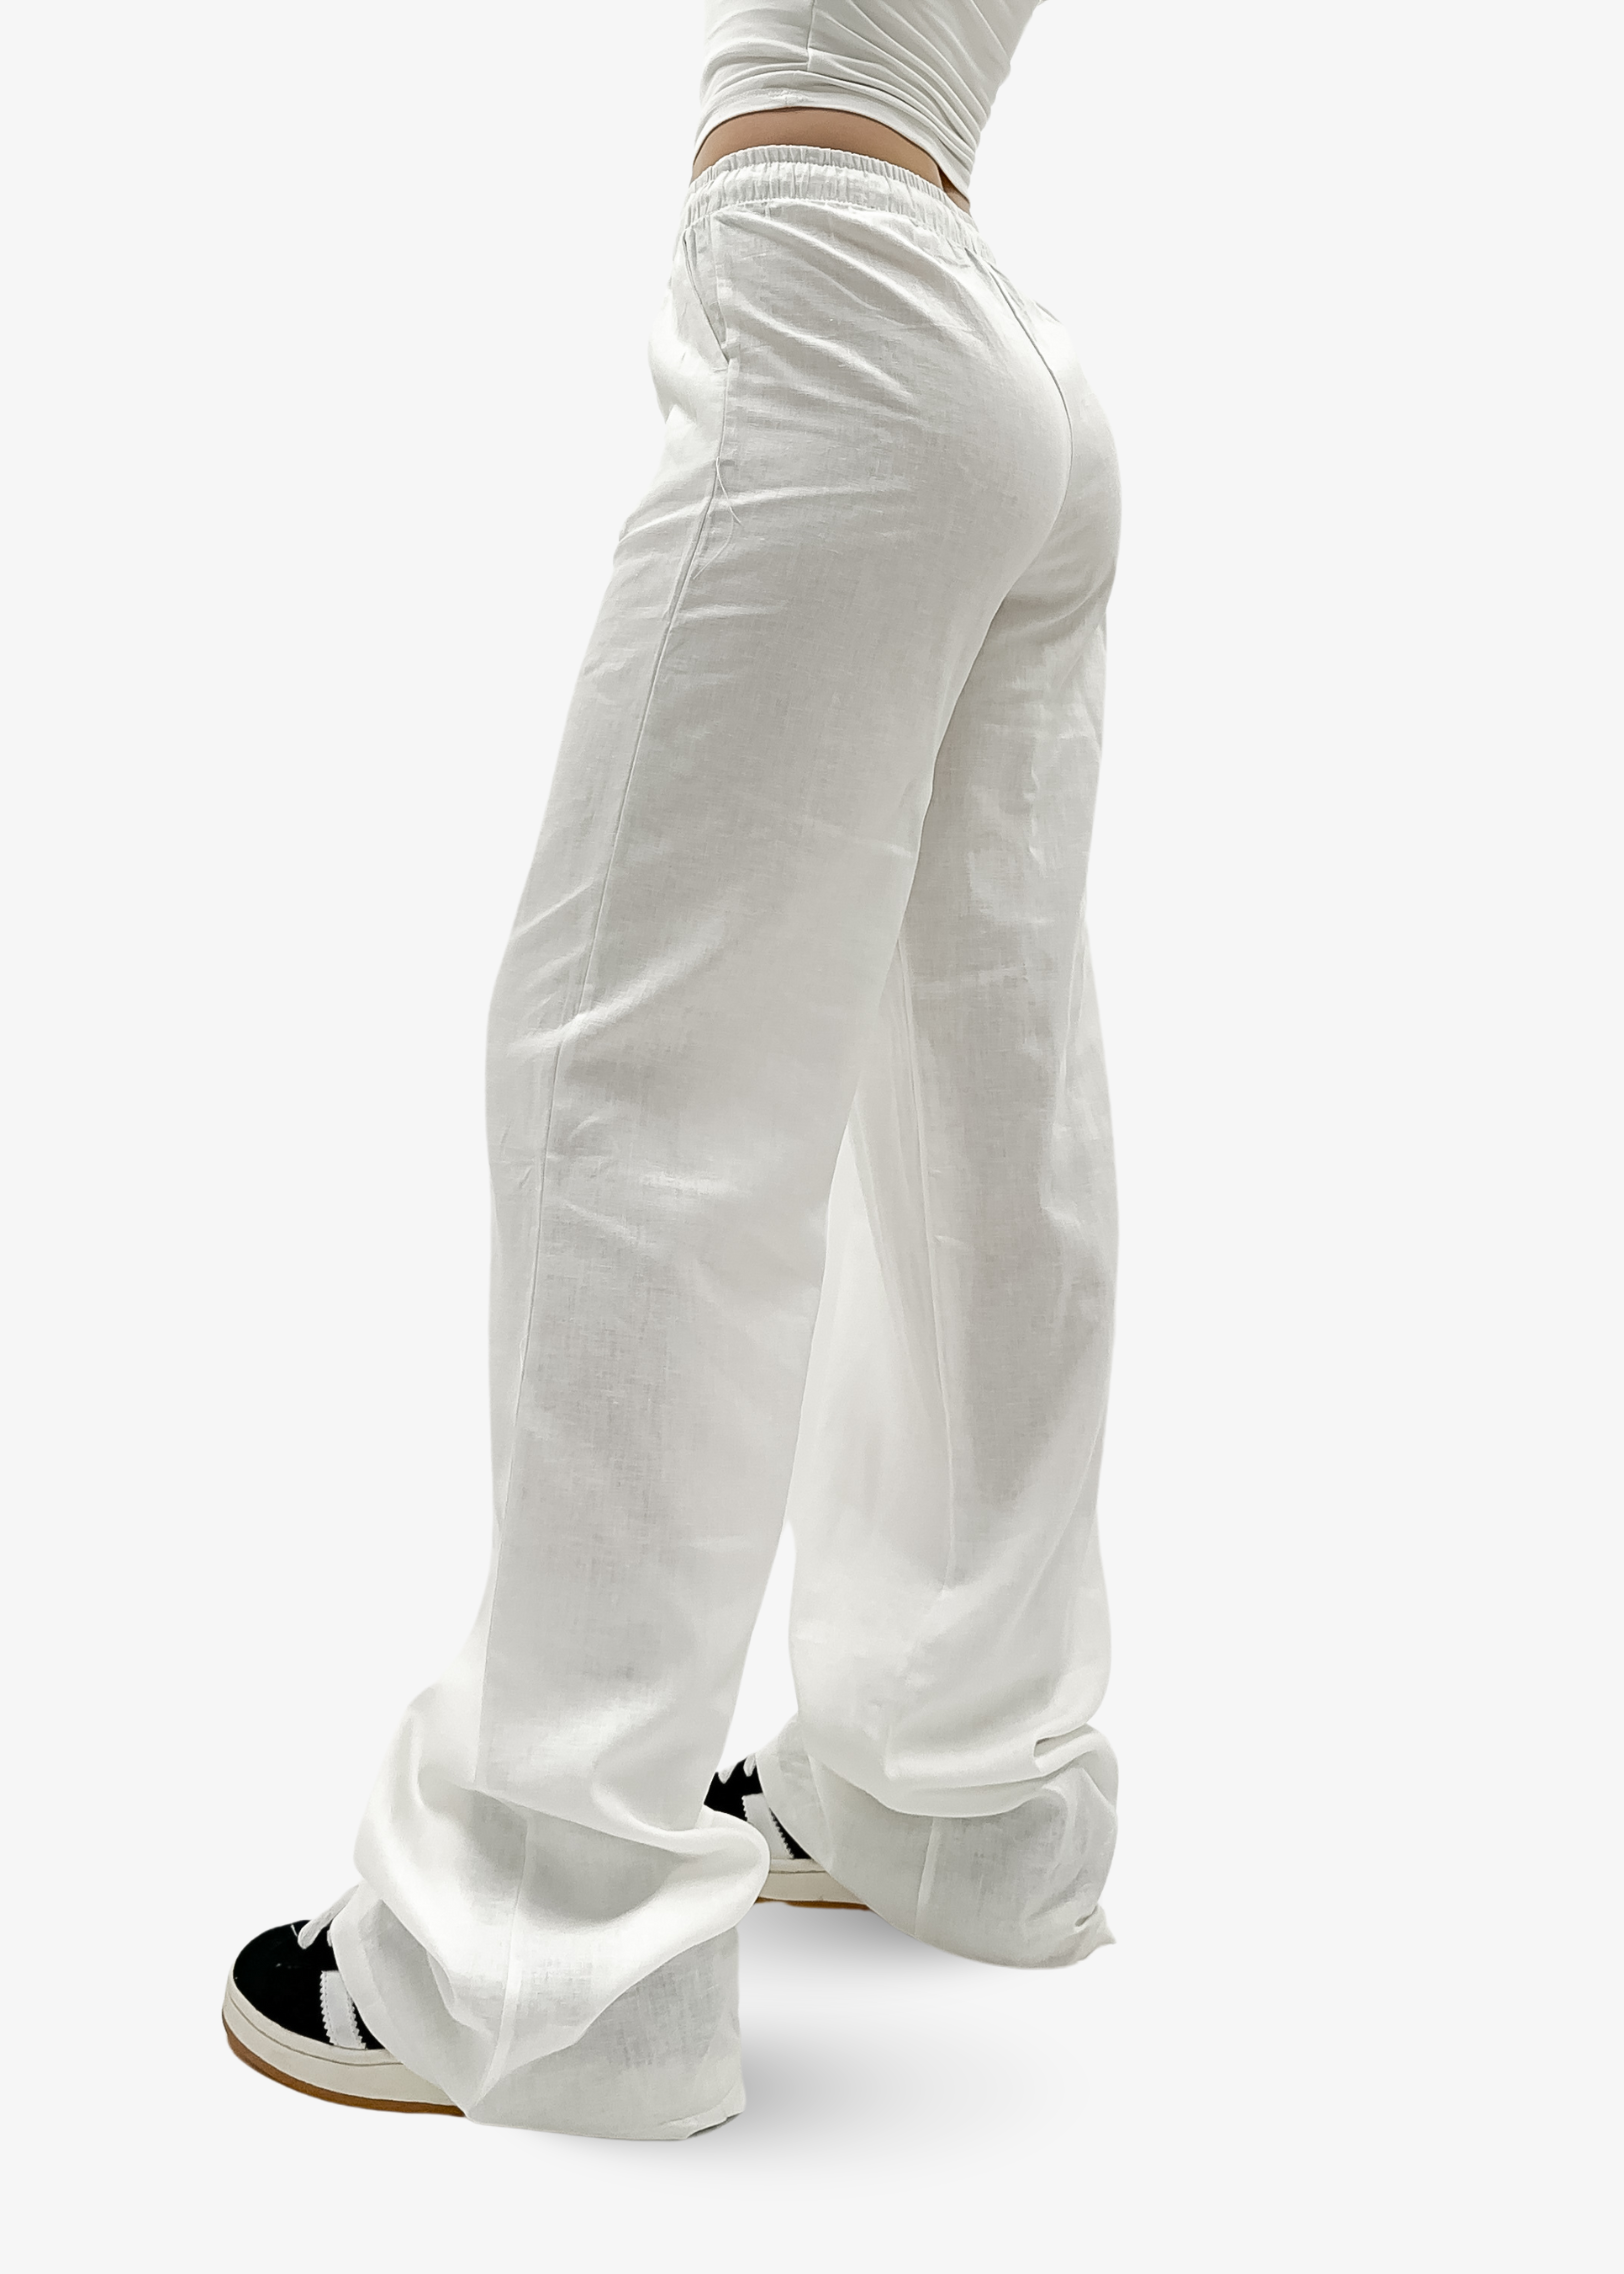 Linnen pants (TALL) White